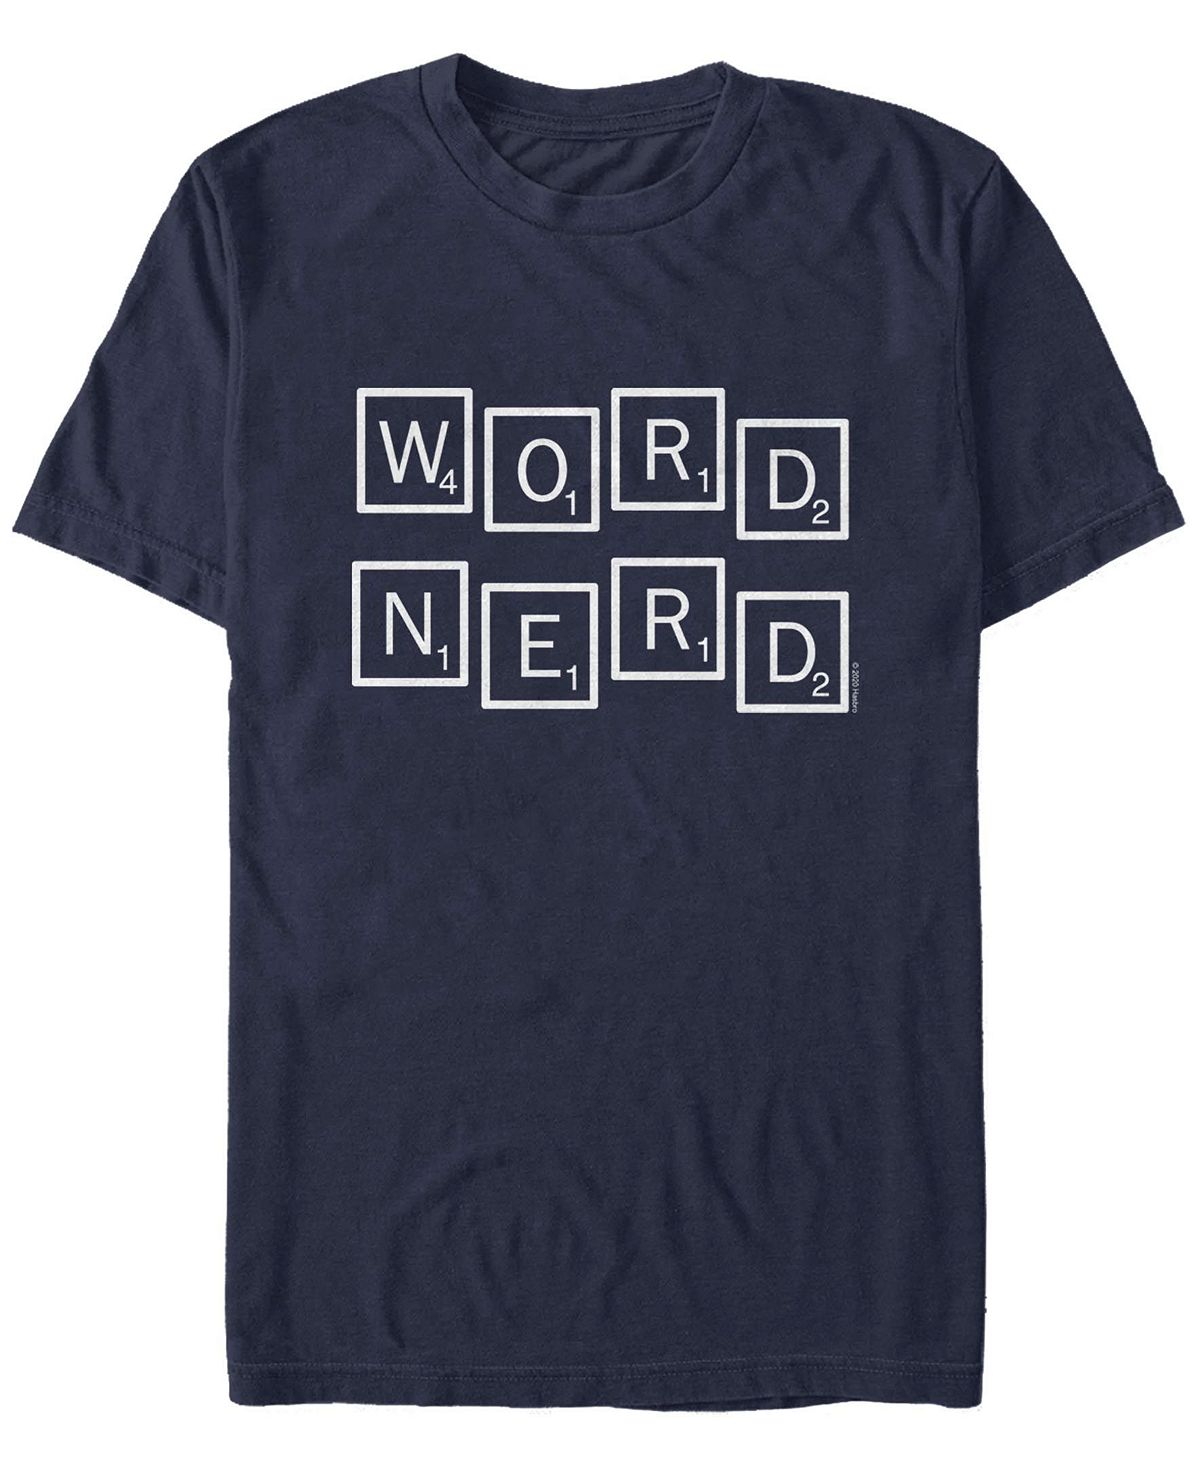 Мужская футболка word nerd с круглым вырезом и короткими рукавами Fifth Sun, синий official scrabble words